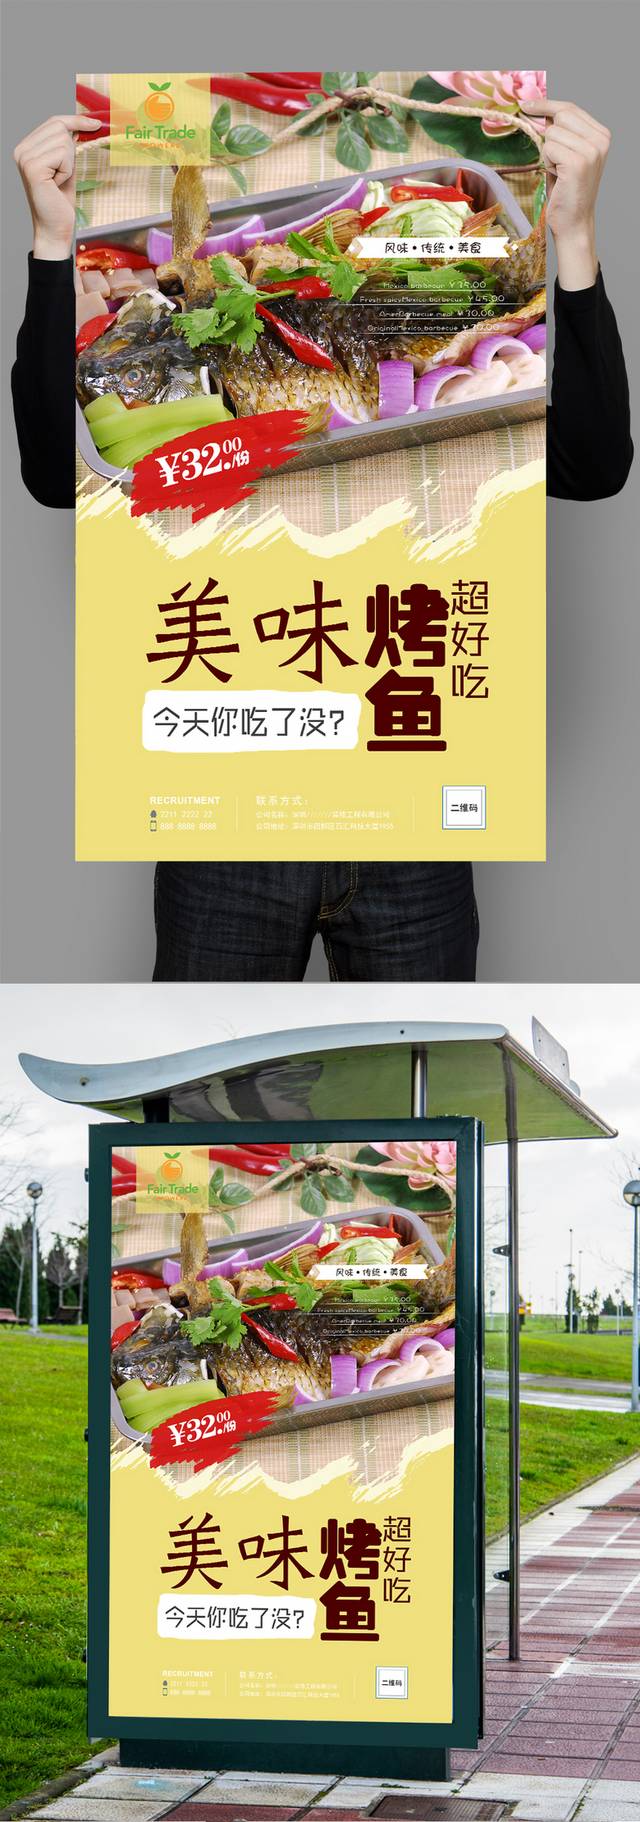 经典烤鱼促销海报设计